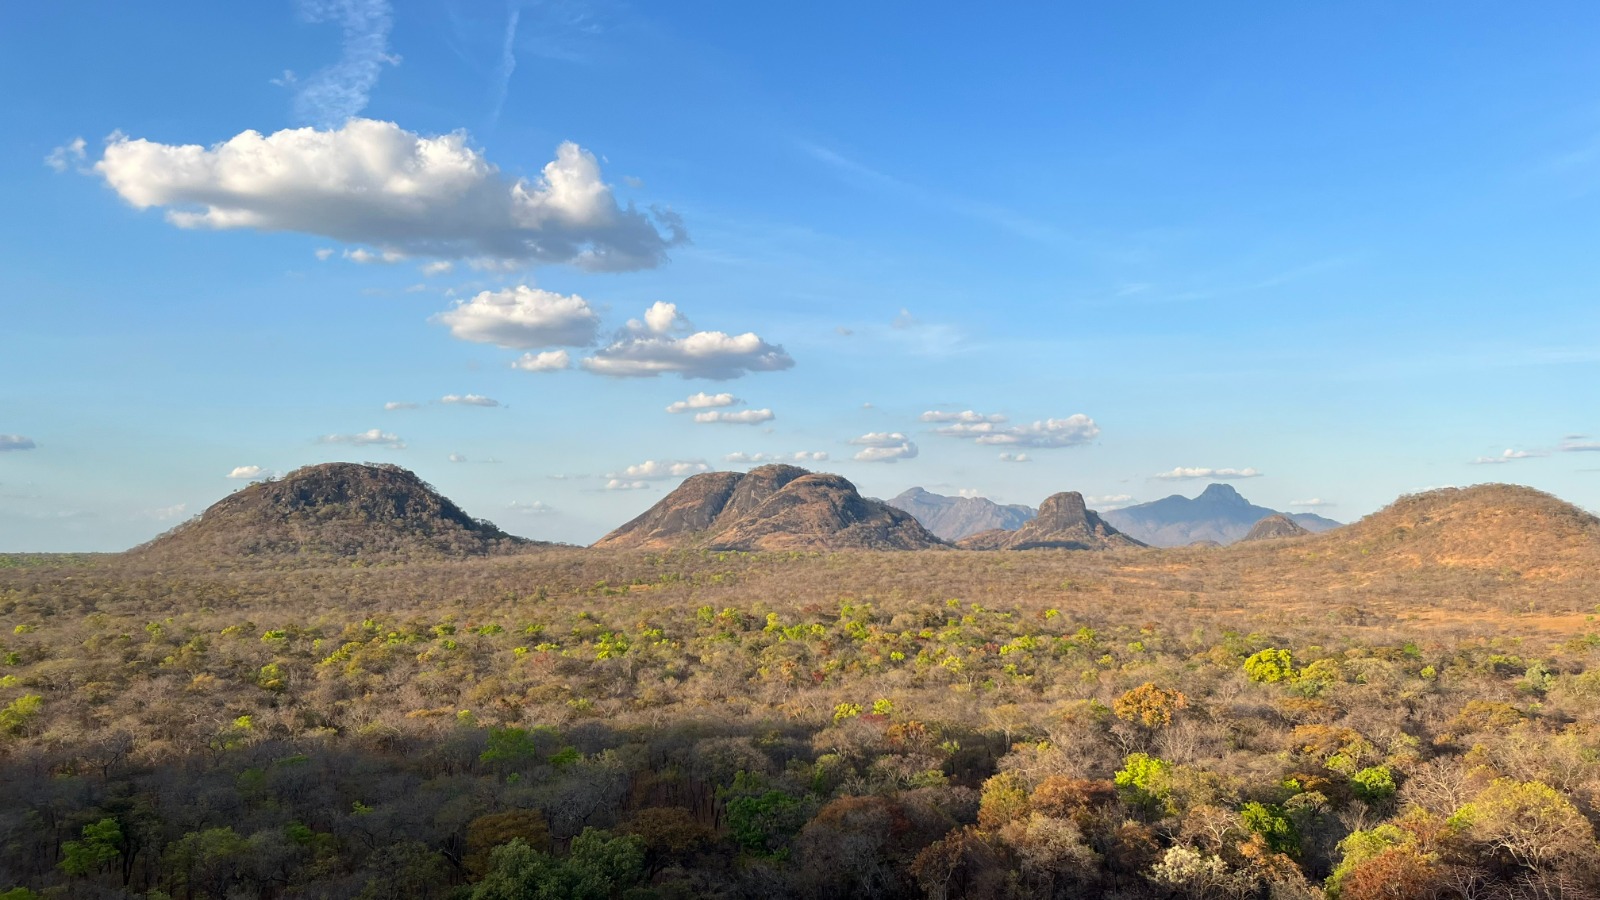 Moçambique/Ambiente: Reforço da Conservação em Moçambique, Uma Colaboração para a Reserva Especial do Niassa